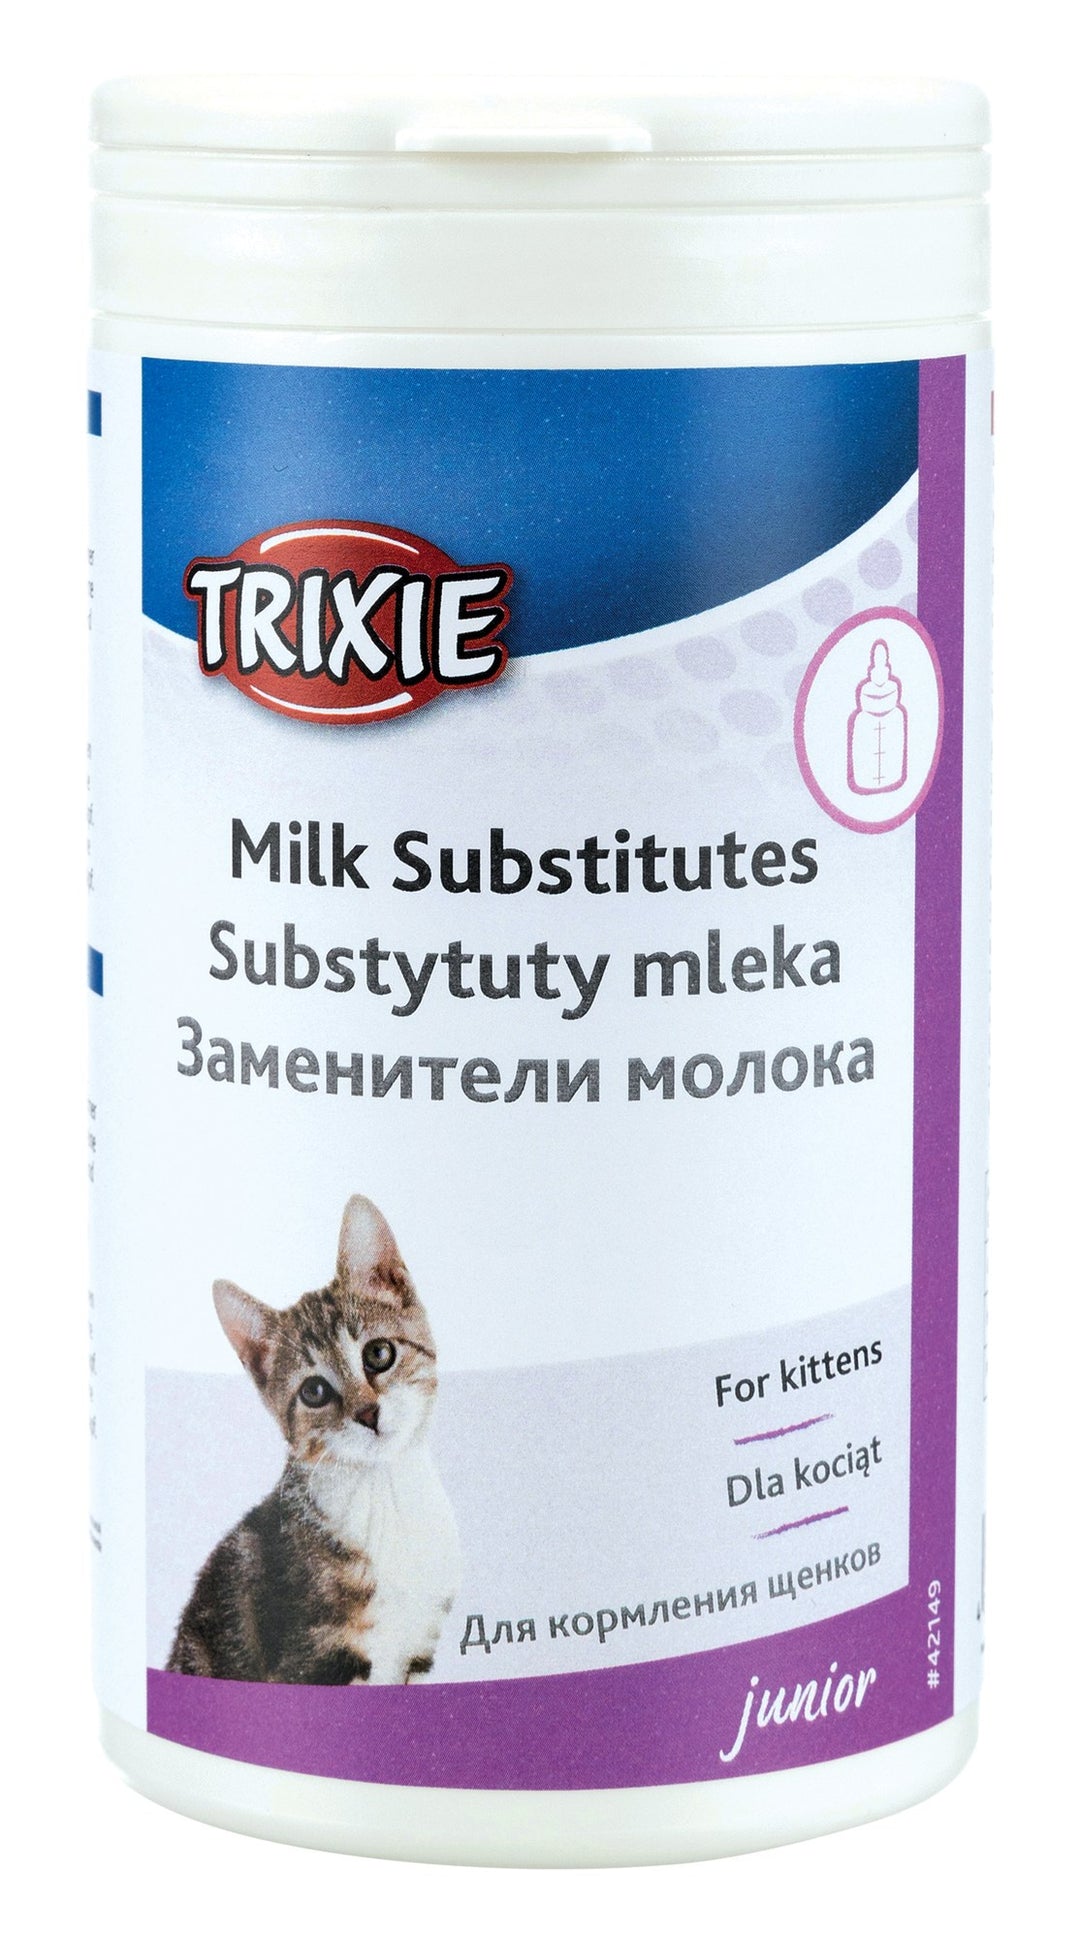 Milk Substitute